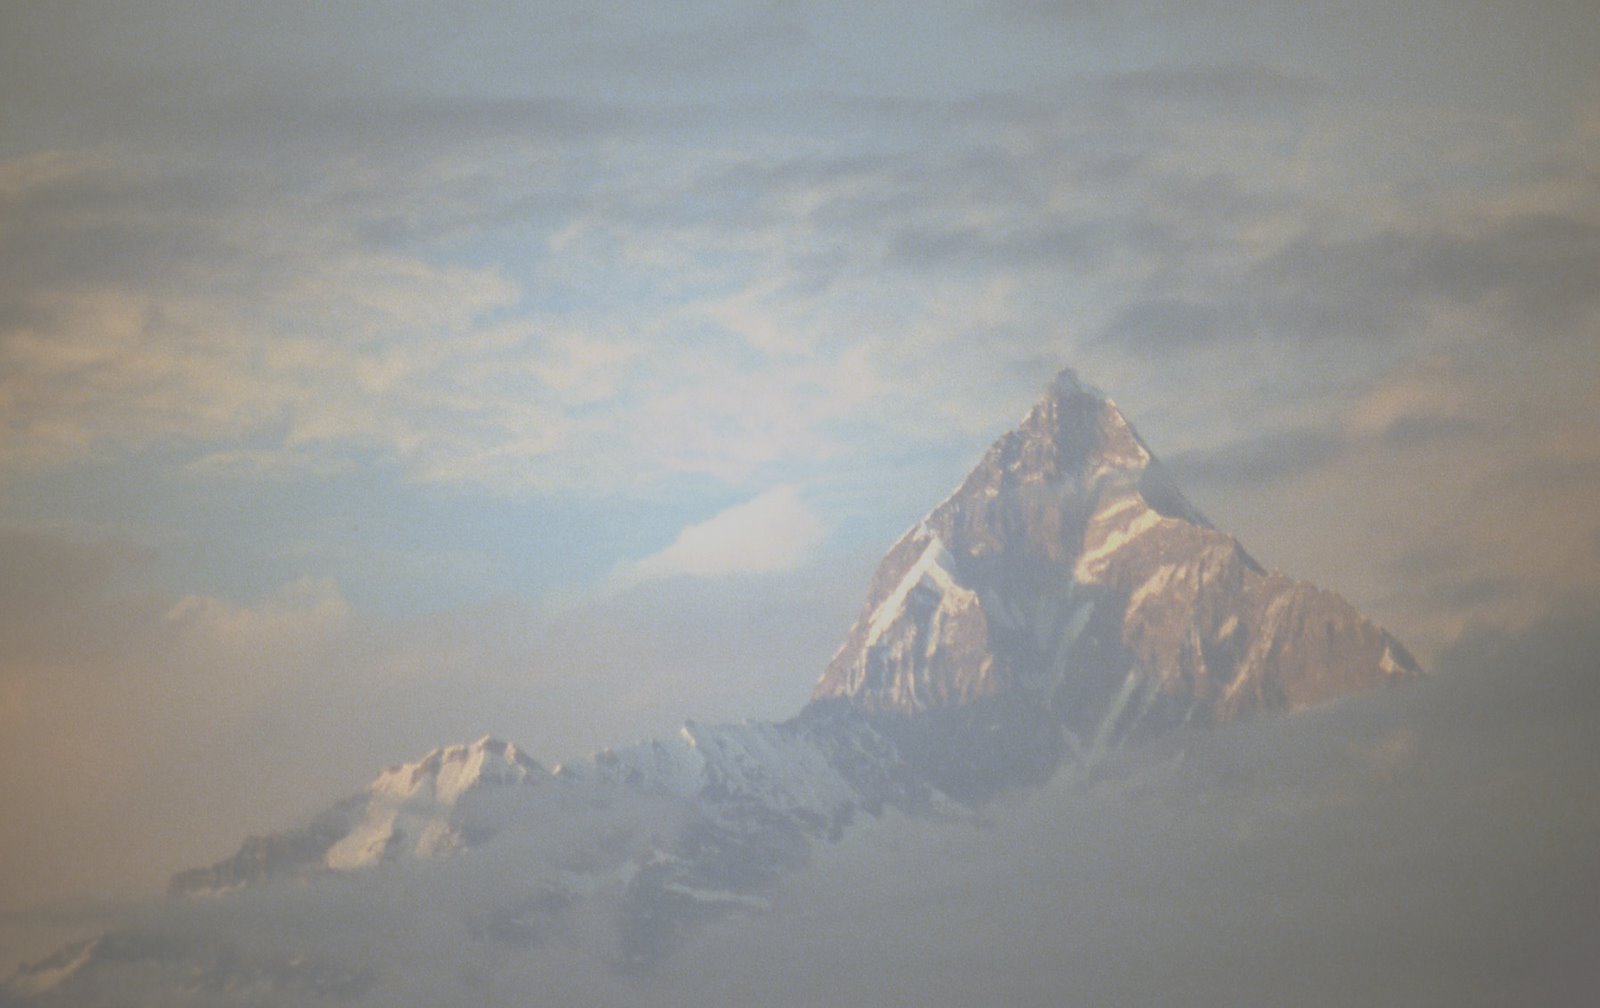 [Machhapuchhare,+view+from+Pokhara.jpg]